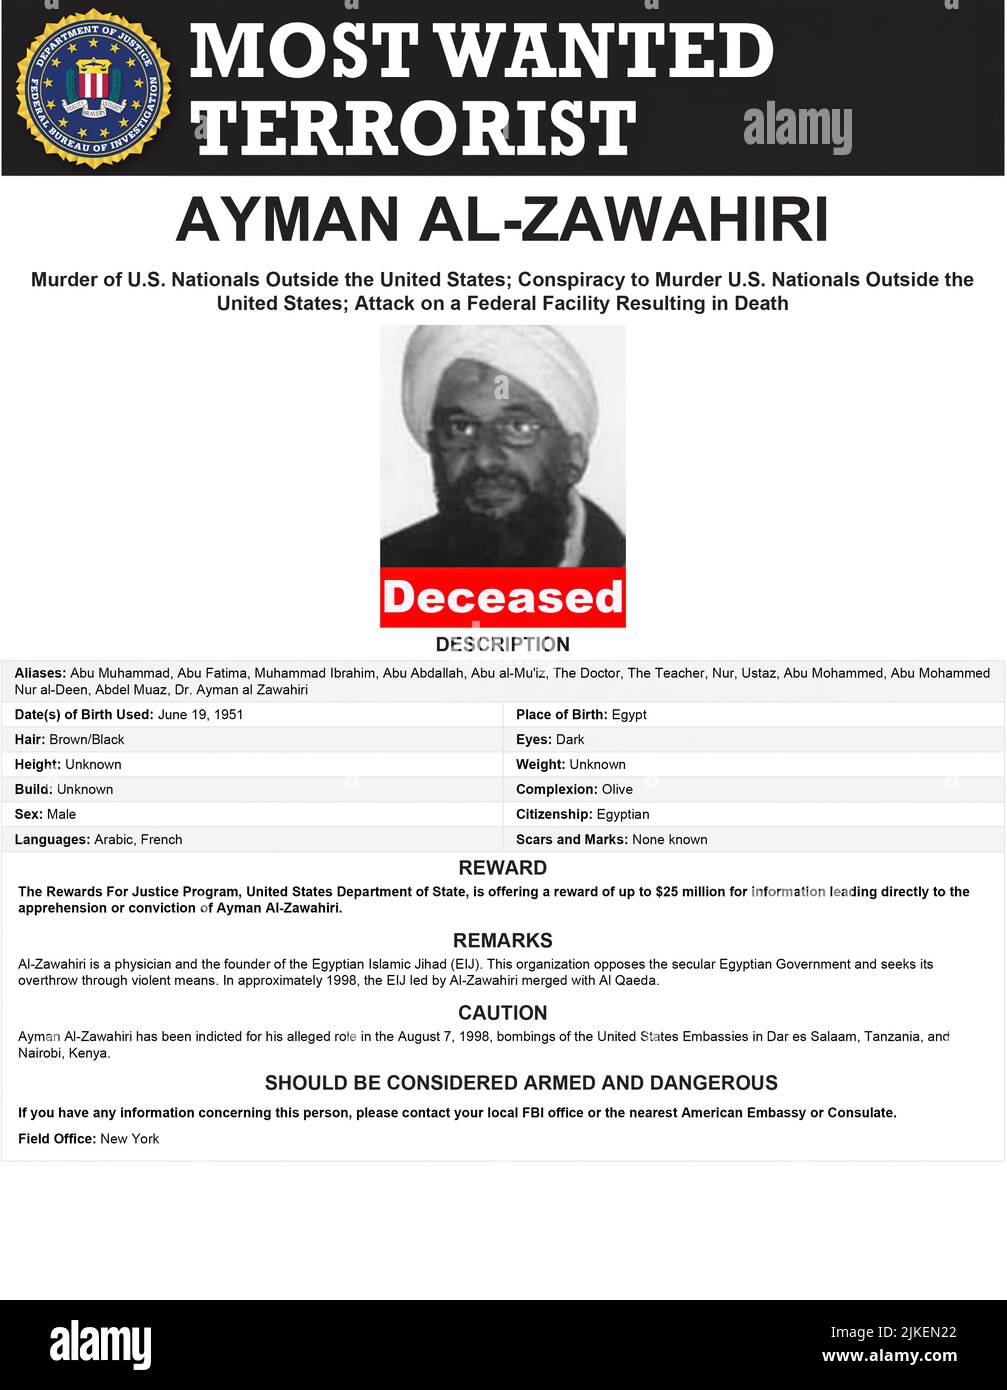 Le chef terroriste d'Al-Qaïda, Ayman al-Zawahiri affiche « recherché » du FBI déclarant le chef terroriste décédé. Ayman Mohammed Rabie al-Zawahiri; 19 juin 1951 – 31 juillet 2022) était un médecin et théologien d'origine égyptienne qui était le chef du groupe terroriste al-Qaida de juin 2011 à sa mort en juillet 2022. Il a succédé à Oussama ben Laden après sa mort et a été auparavant un membre important d'organisations islamistes qui ont mené des attaques en Asie, en Afrique, en Amérique du Nord et en Europe. En 2012, il a appelé les musulmans à kidnapper les Occidentaux dans les pays musulmans. Banque D'Images